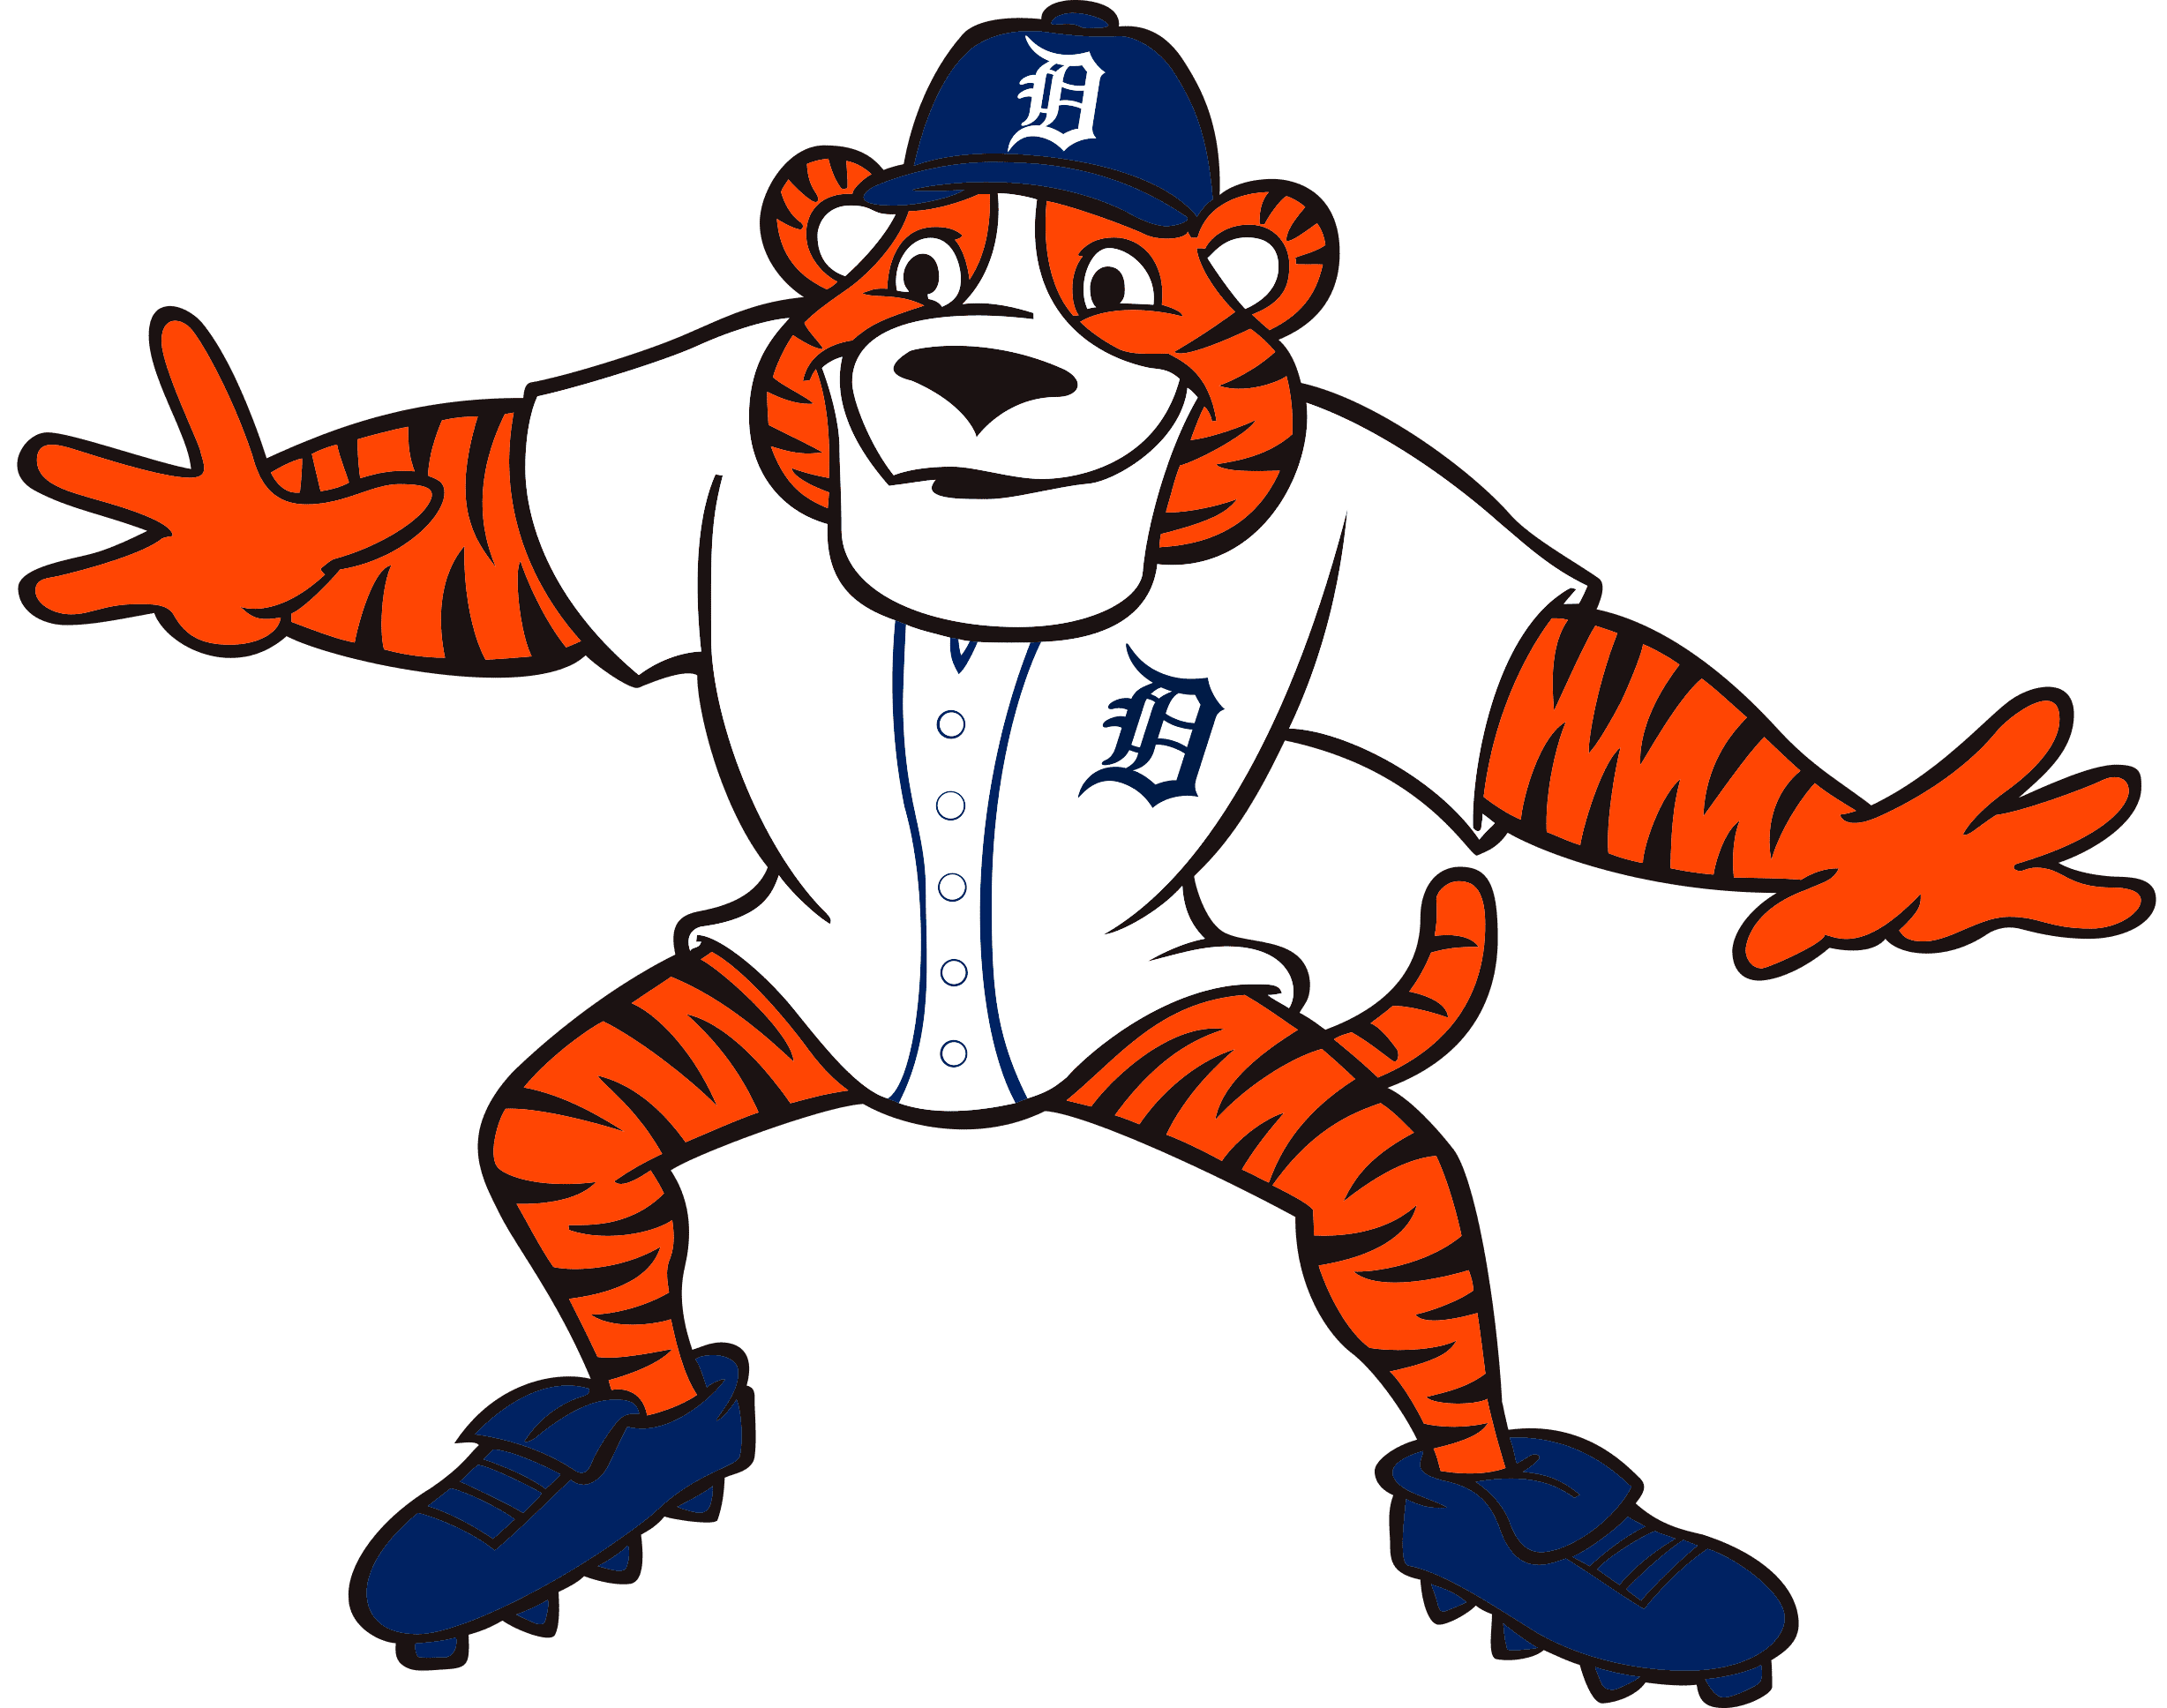 Detroit Tigers Logo svg, mlb svg, eps, dxf, png, digital file for cut – SVG  Sporty